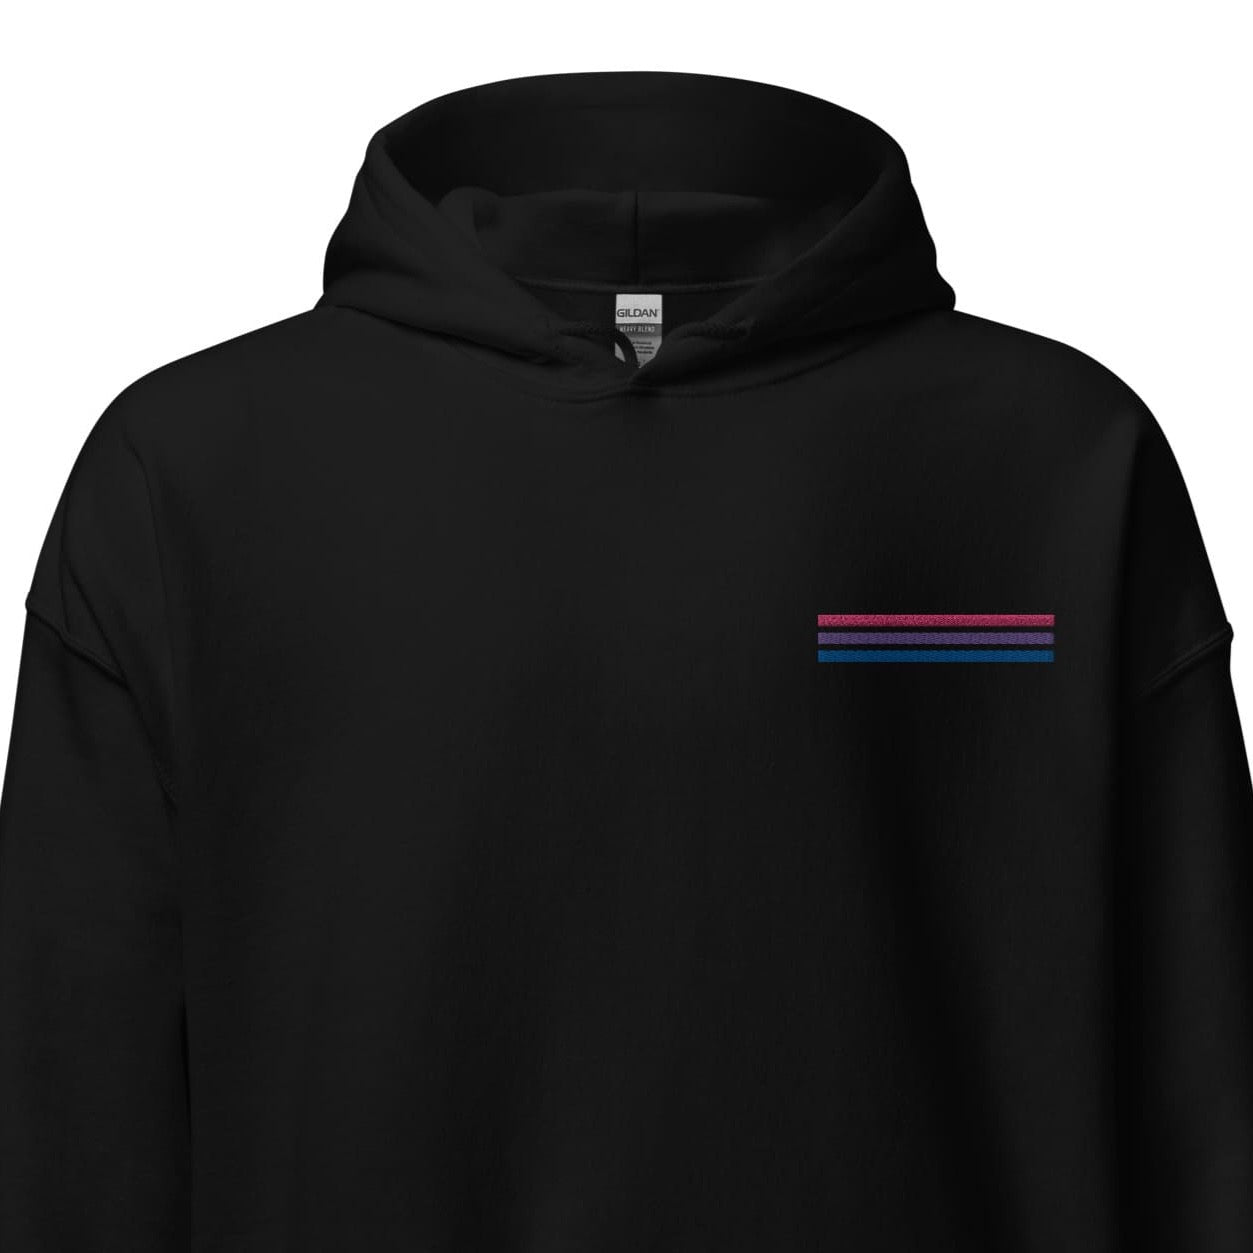 bisexual hoodie, subtle bi pride flag embroidered pocket design hooded sweatshirt, main